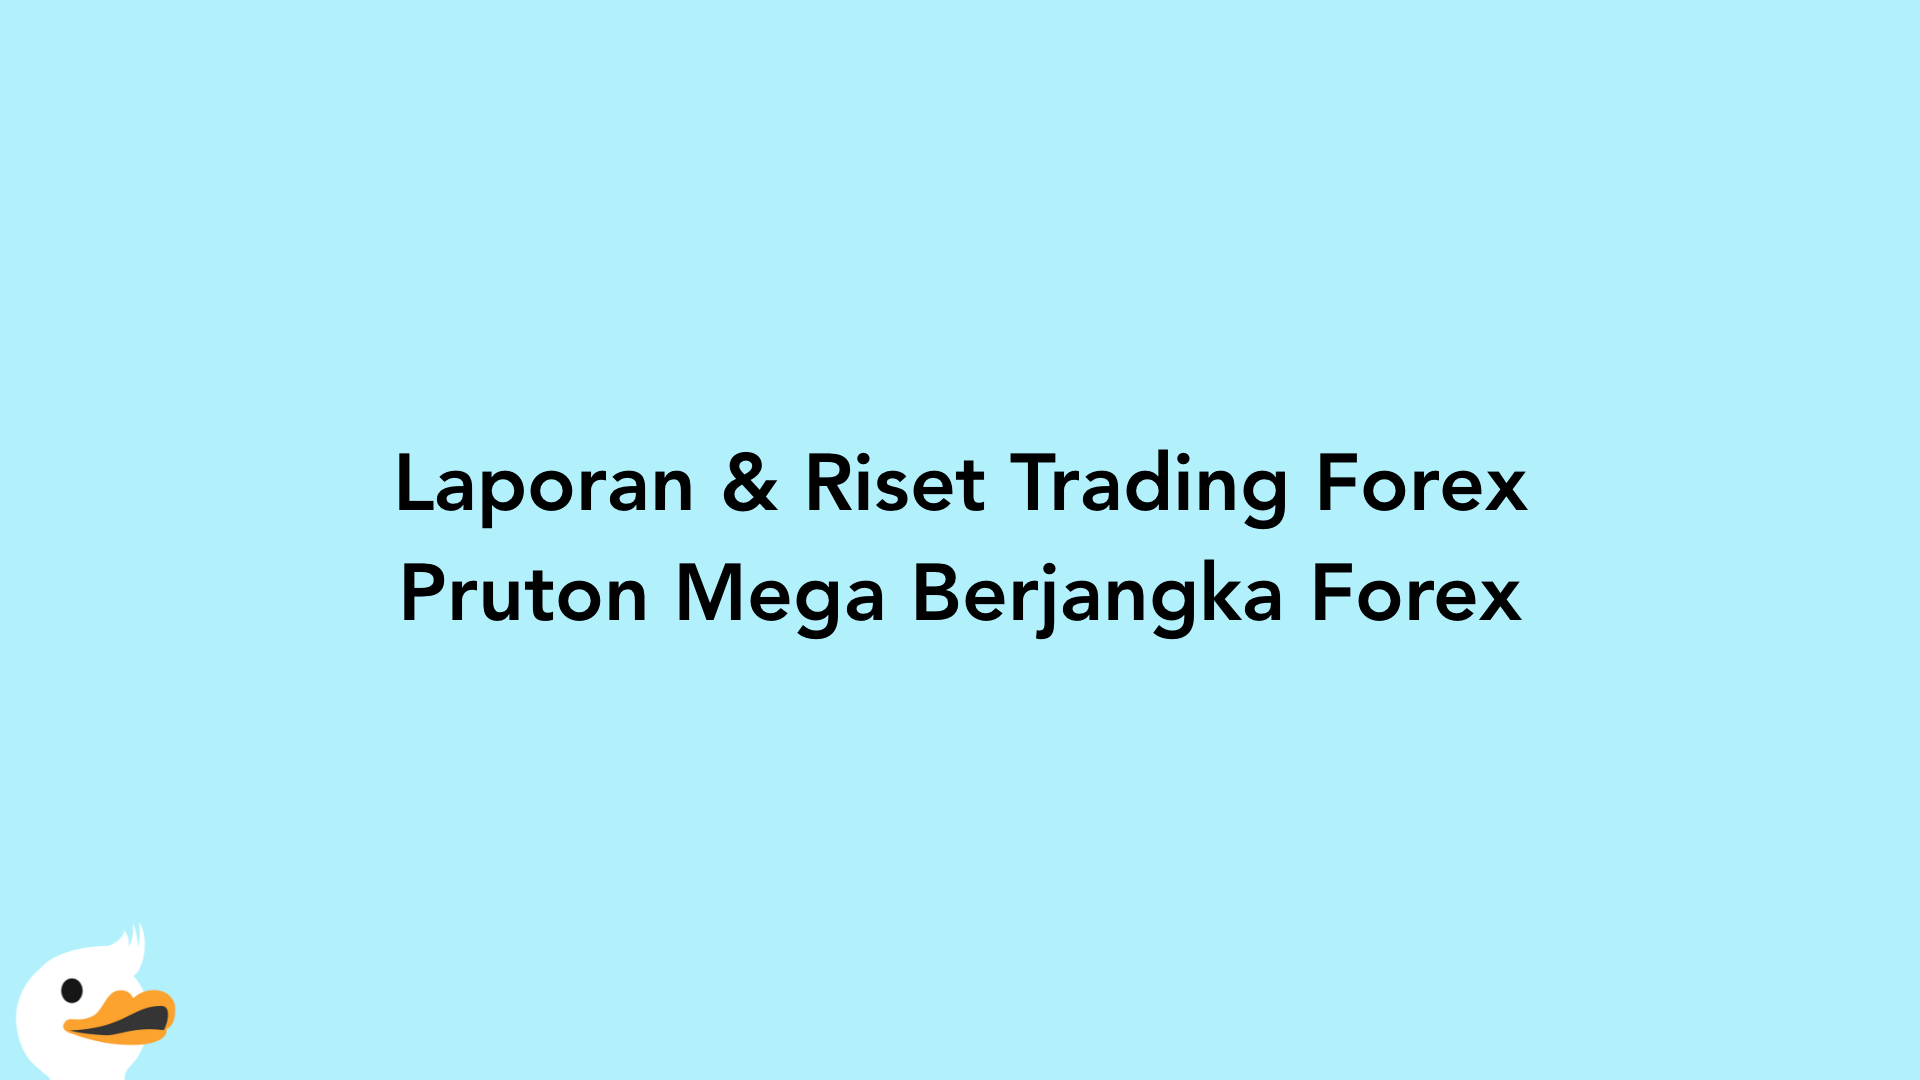 Laporan & Riset Trading Forex Pruton Mega Berjangka Forex